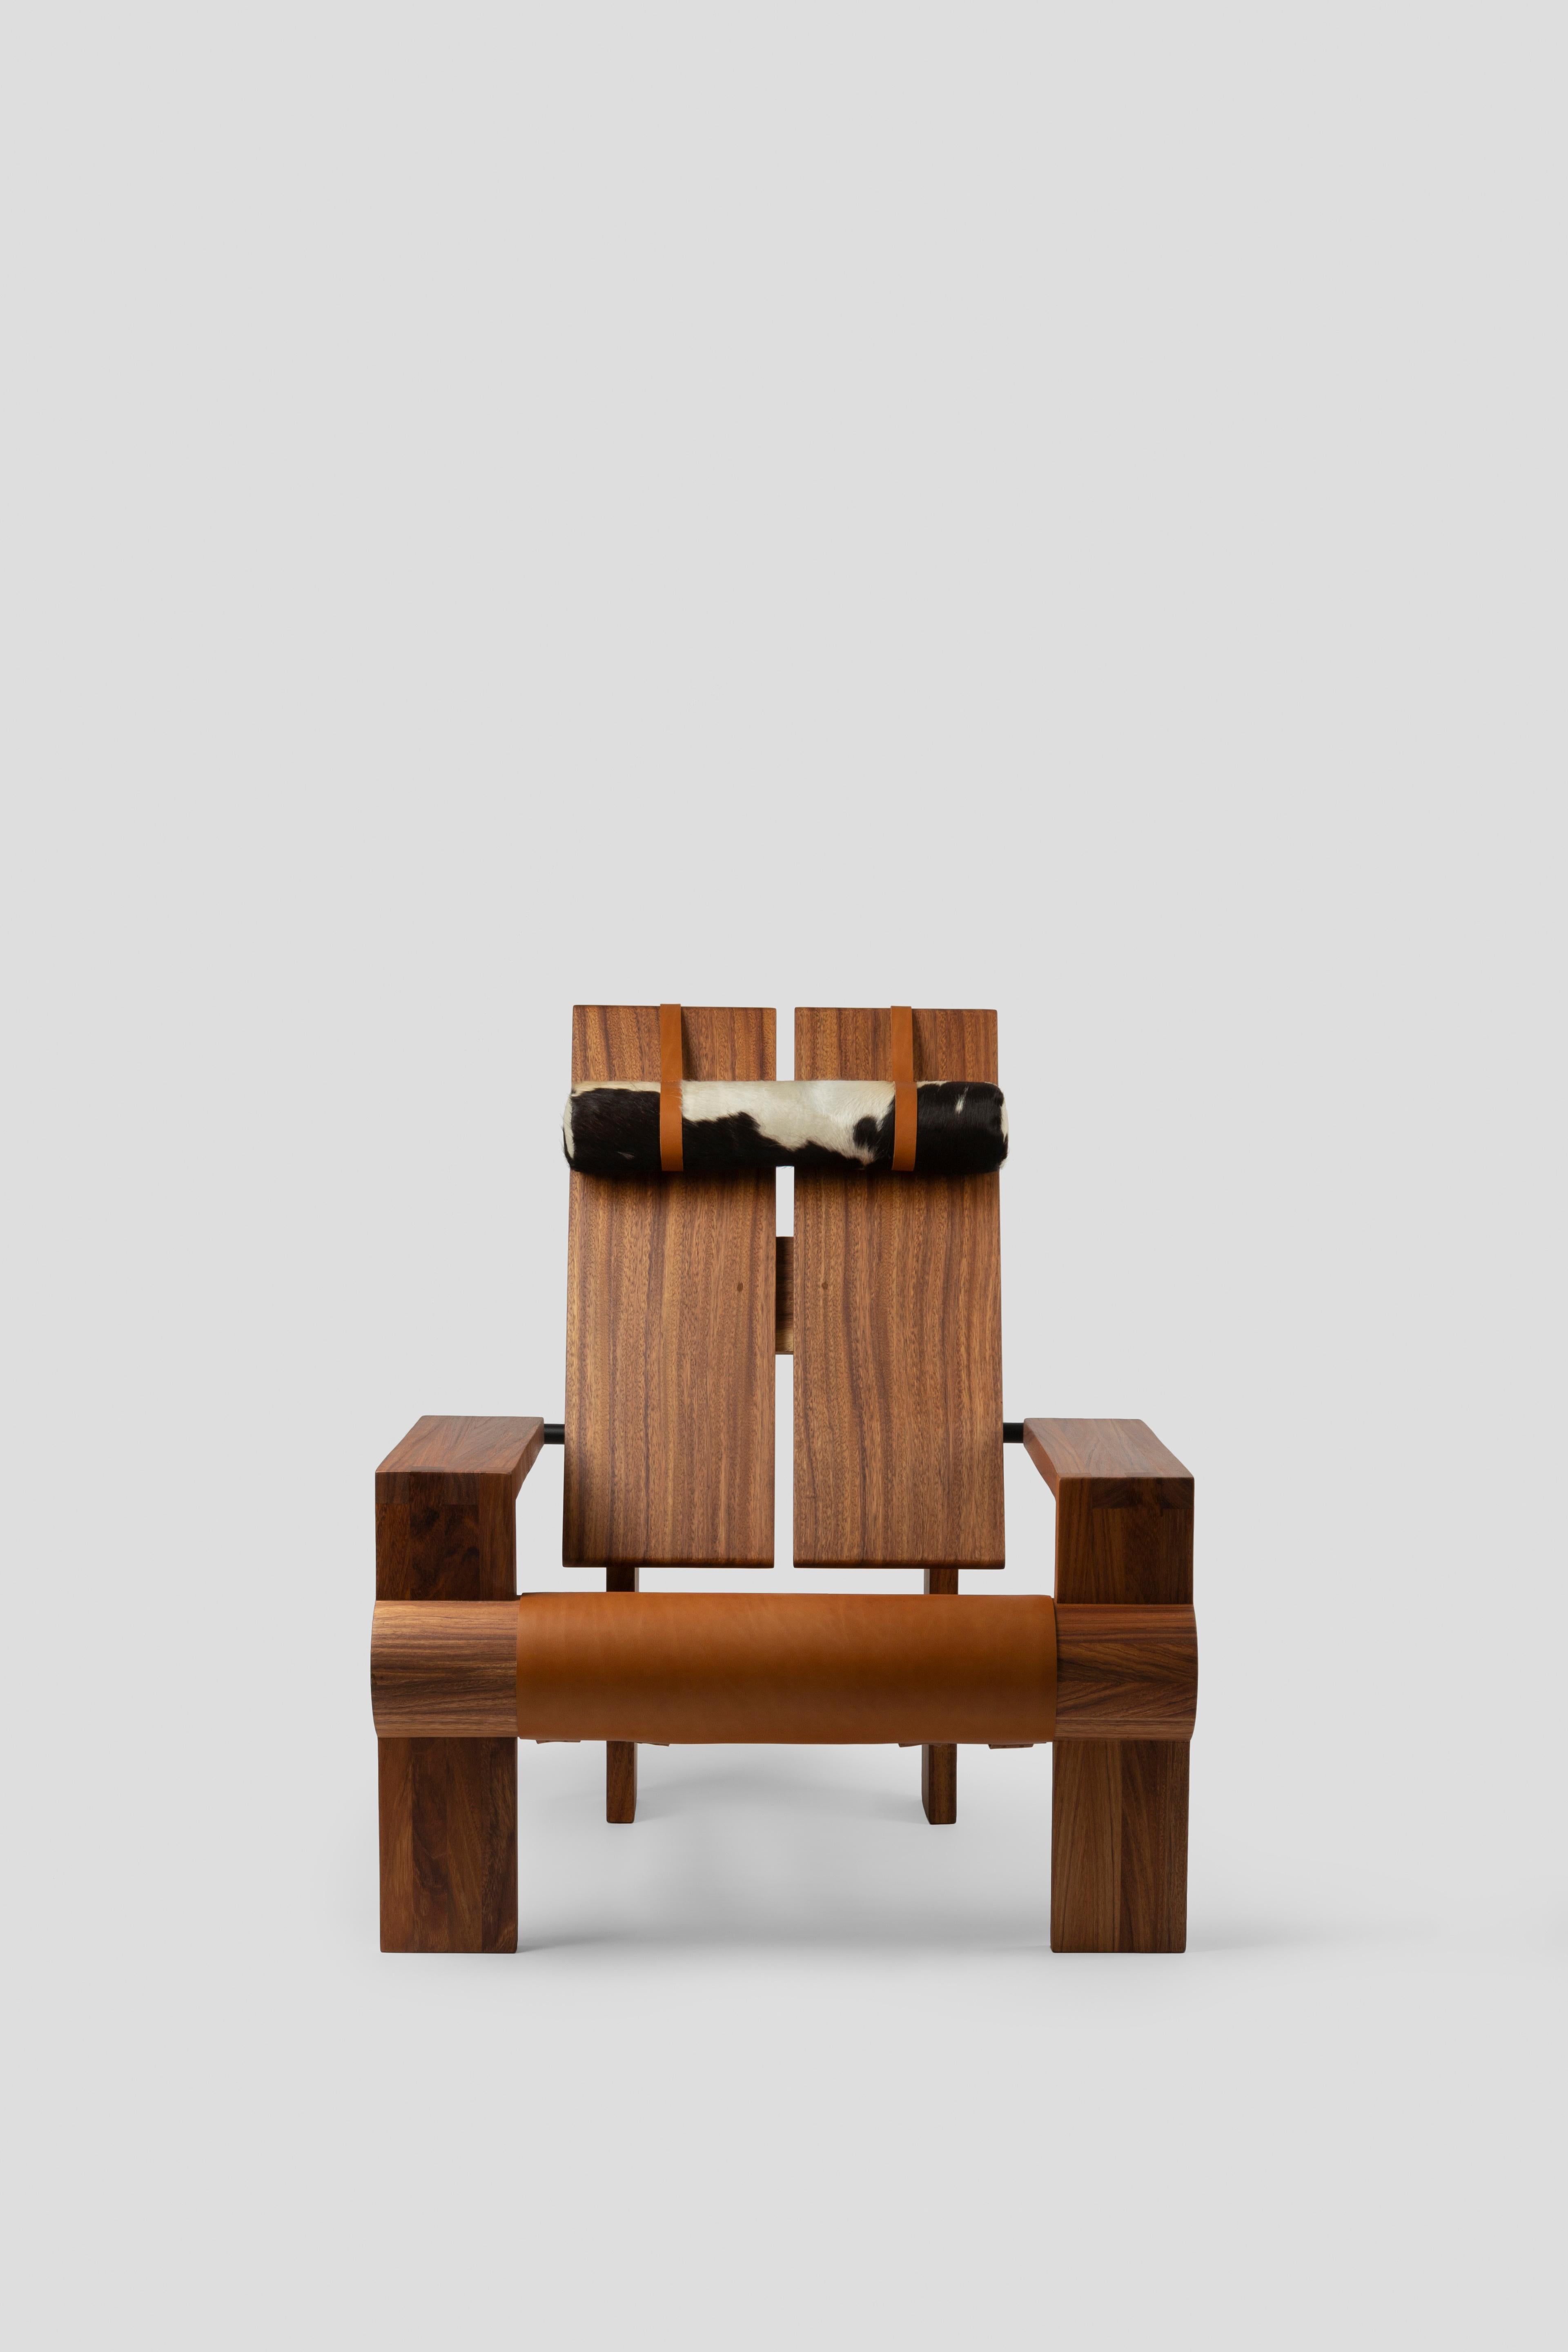 Inspirée par la chaise classique Adirondack, une pièce emblématique américaine souvent utilisée sur les porches et les patios, cette chaise a été conçue à la demande d'un client pour une résidence à Healdsburg, en Californie. 
Notre point de départ